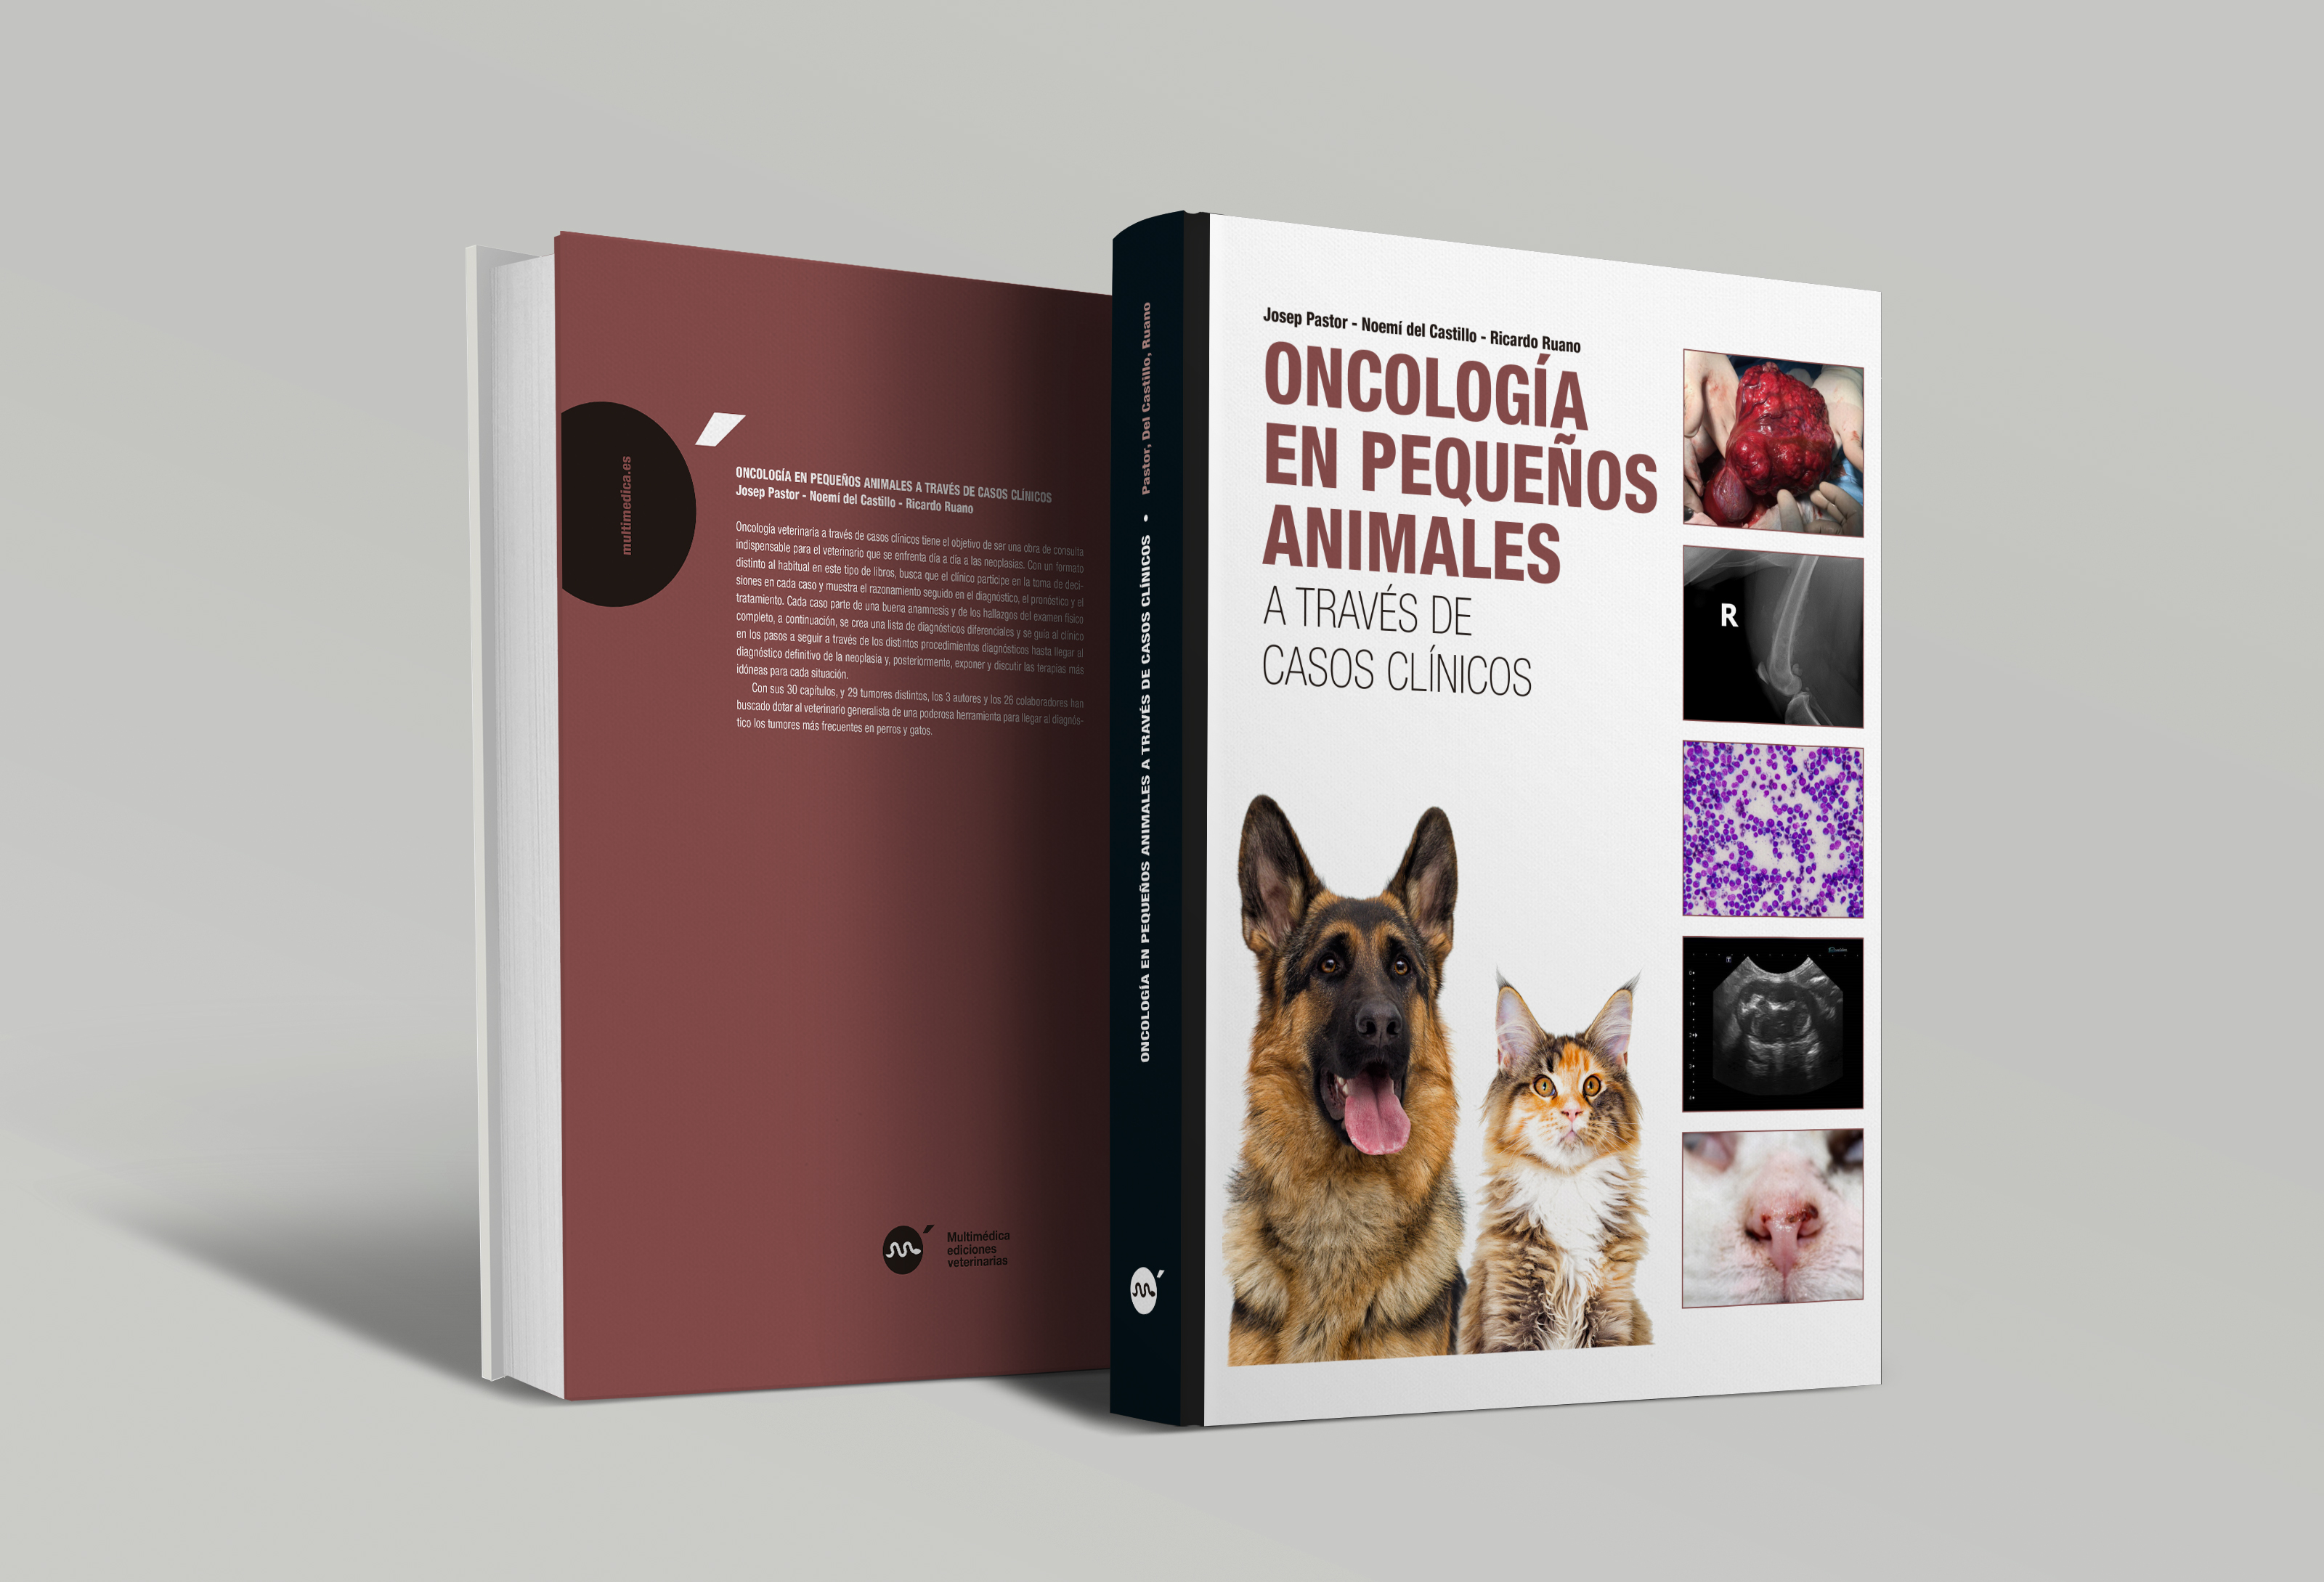 Oncología en pequeños animales  a través de casos clínicos